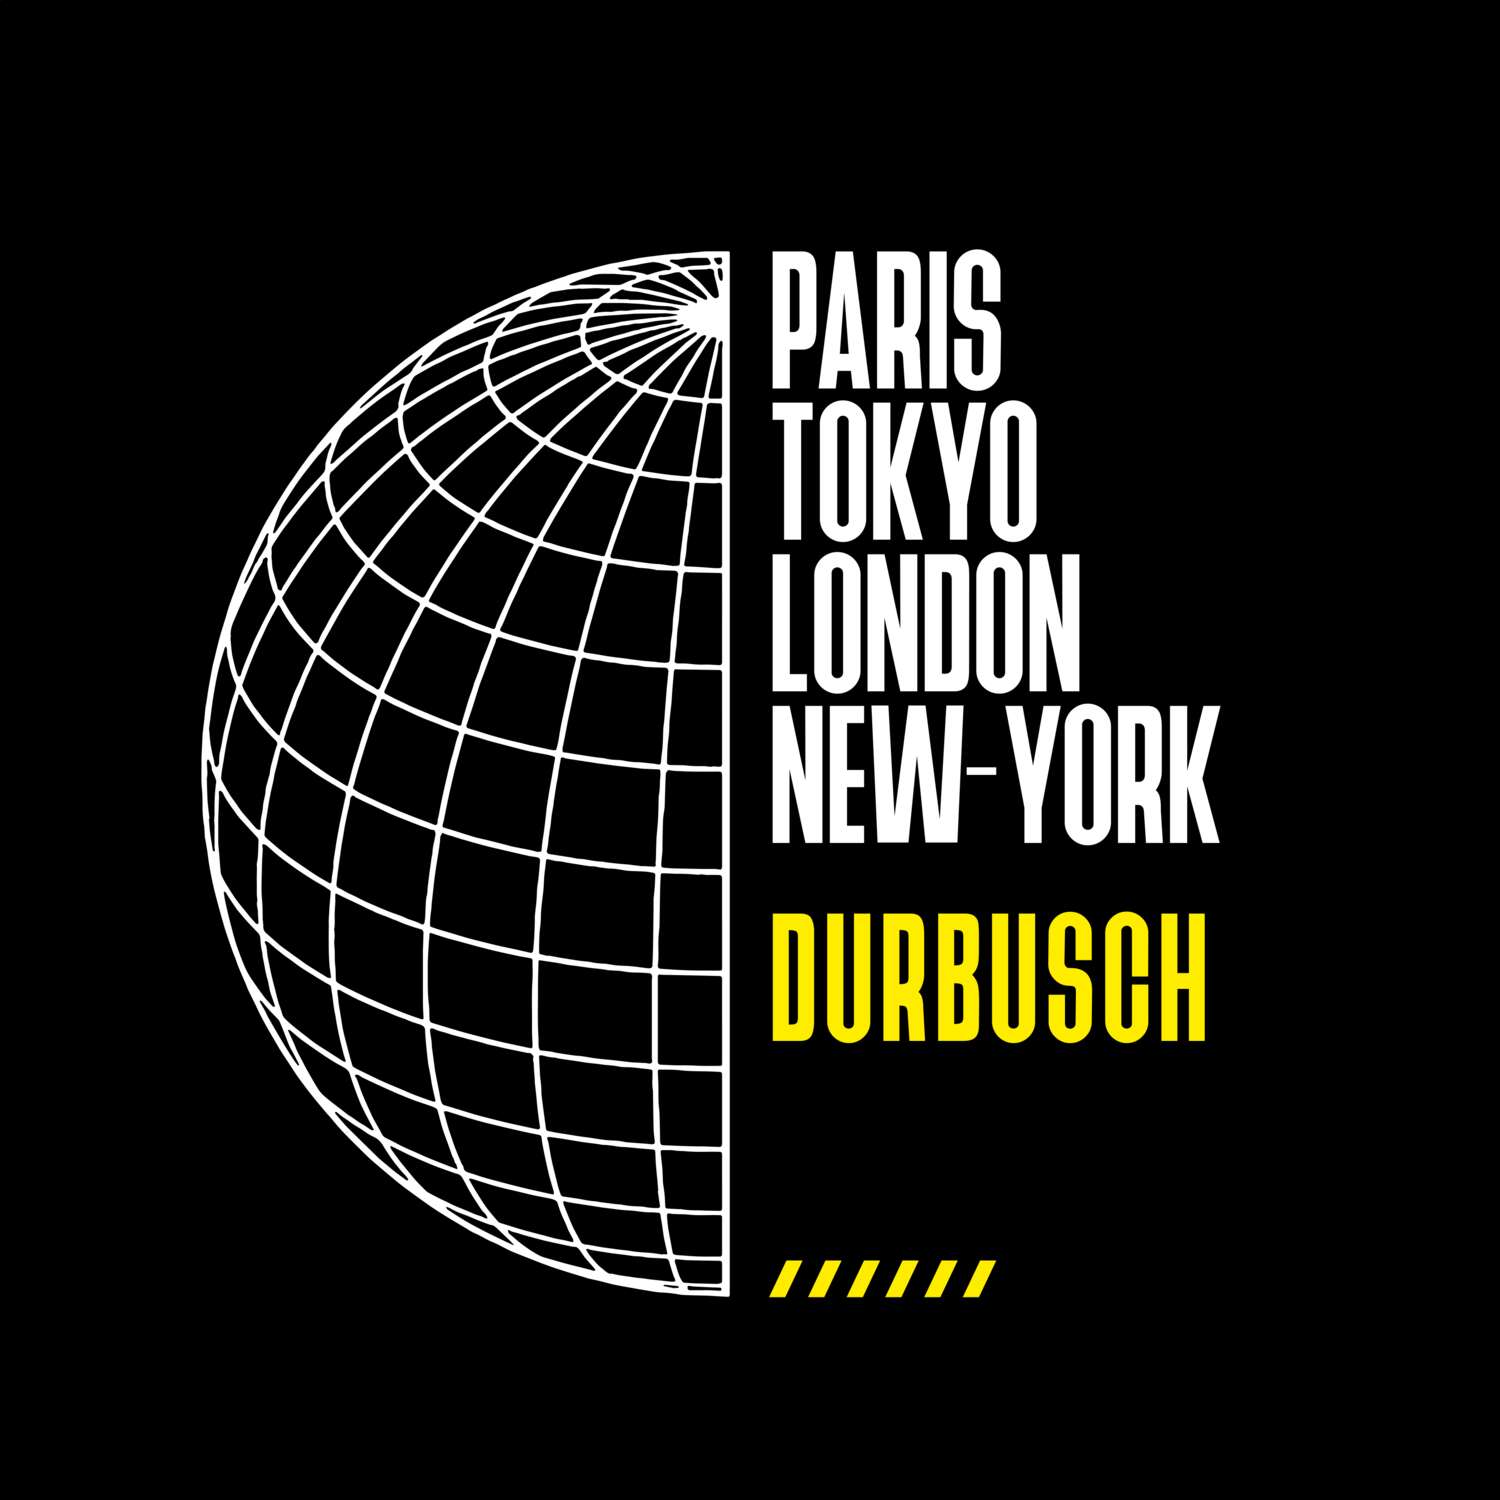 Durbusch T-Shirt »Paris Tokyo London«